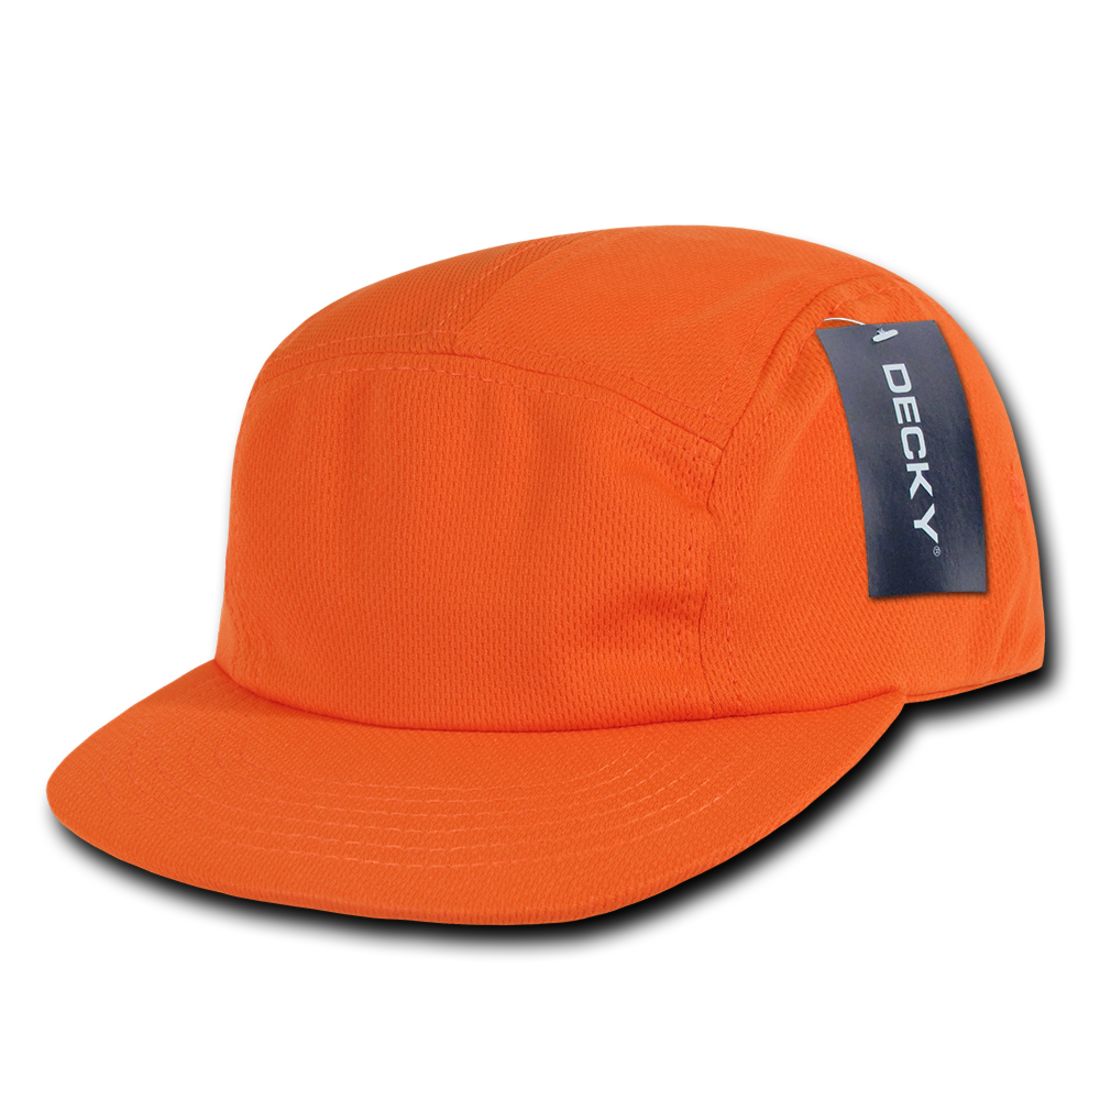 Orange color variant